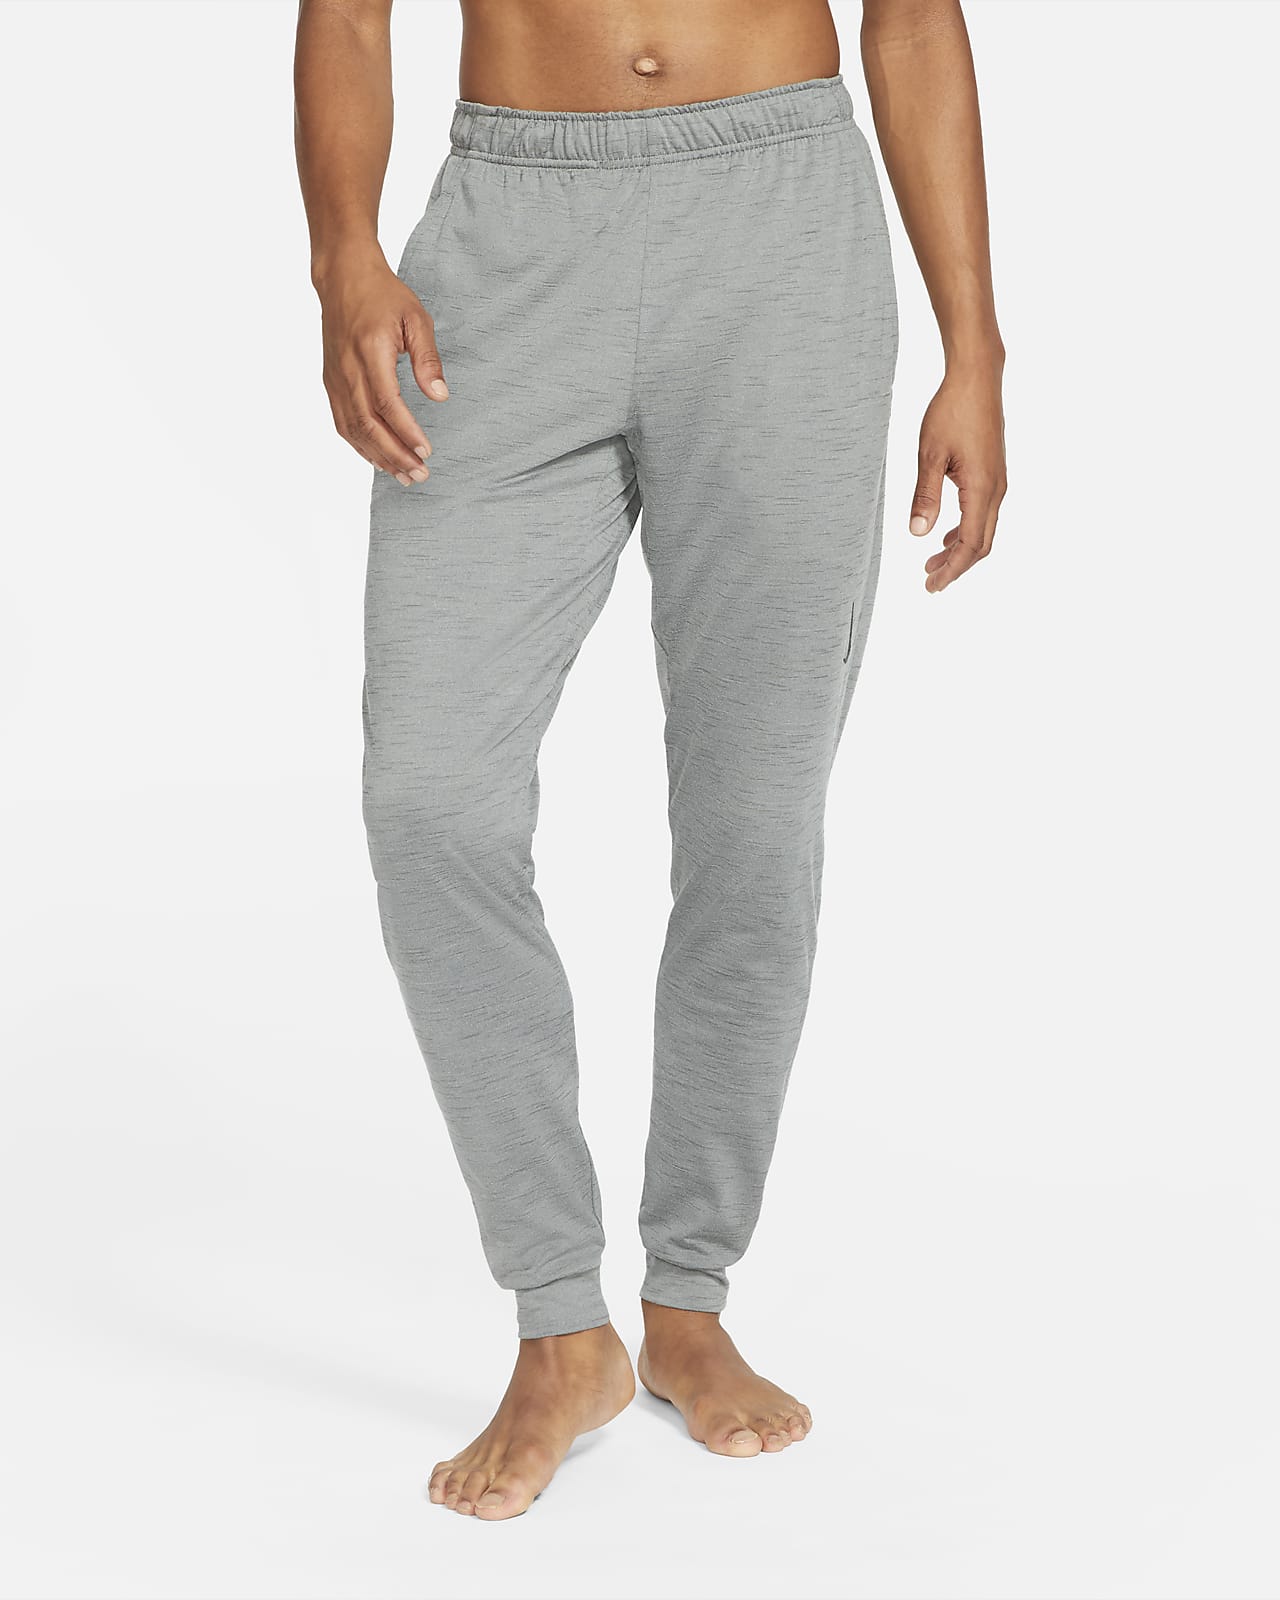 Pantalones de Yoga gris